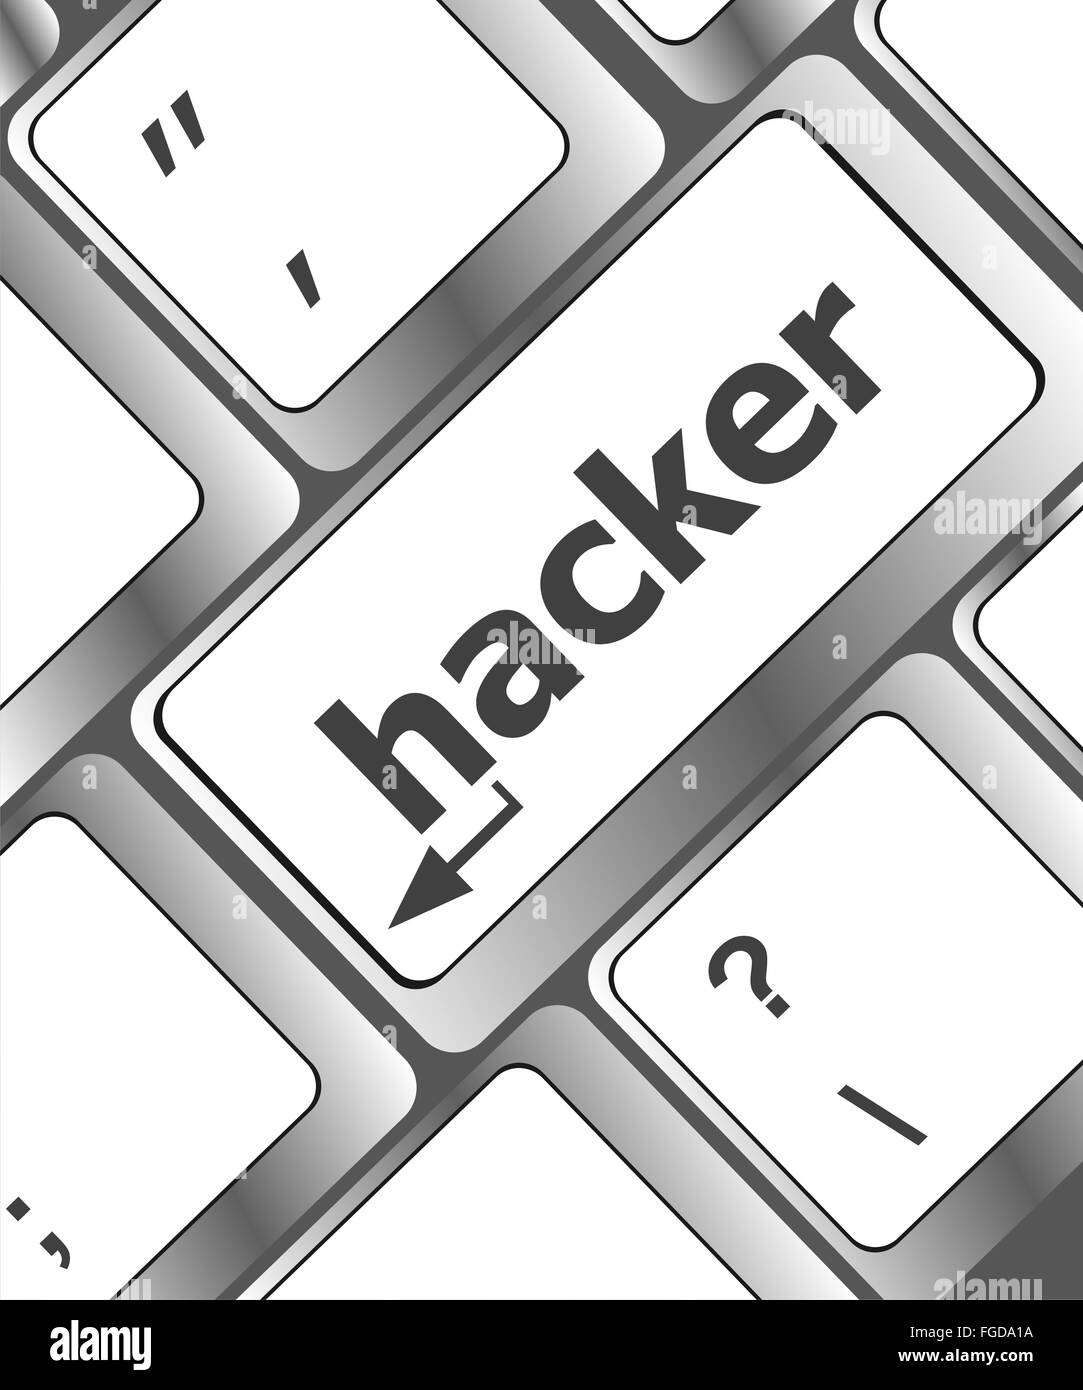 Hacker ataque sobre el teclado, word, internet terrorismo concepto Foto de stock